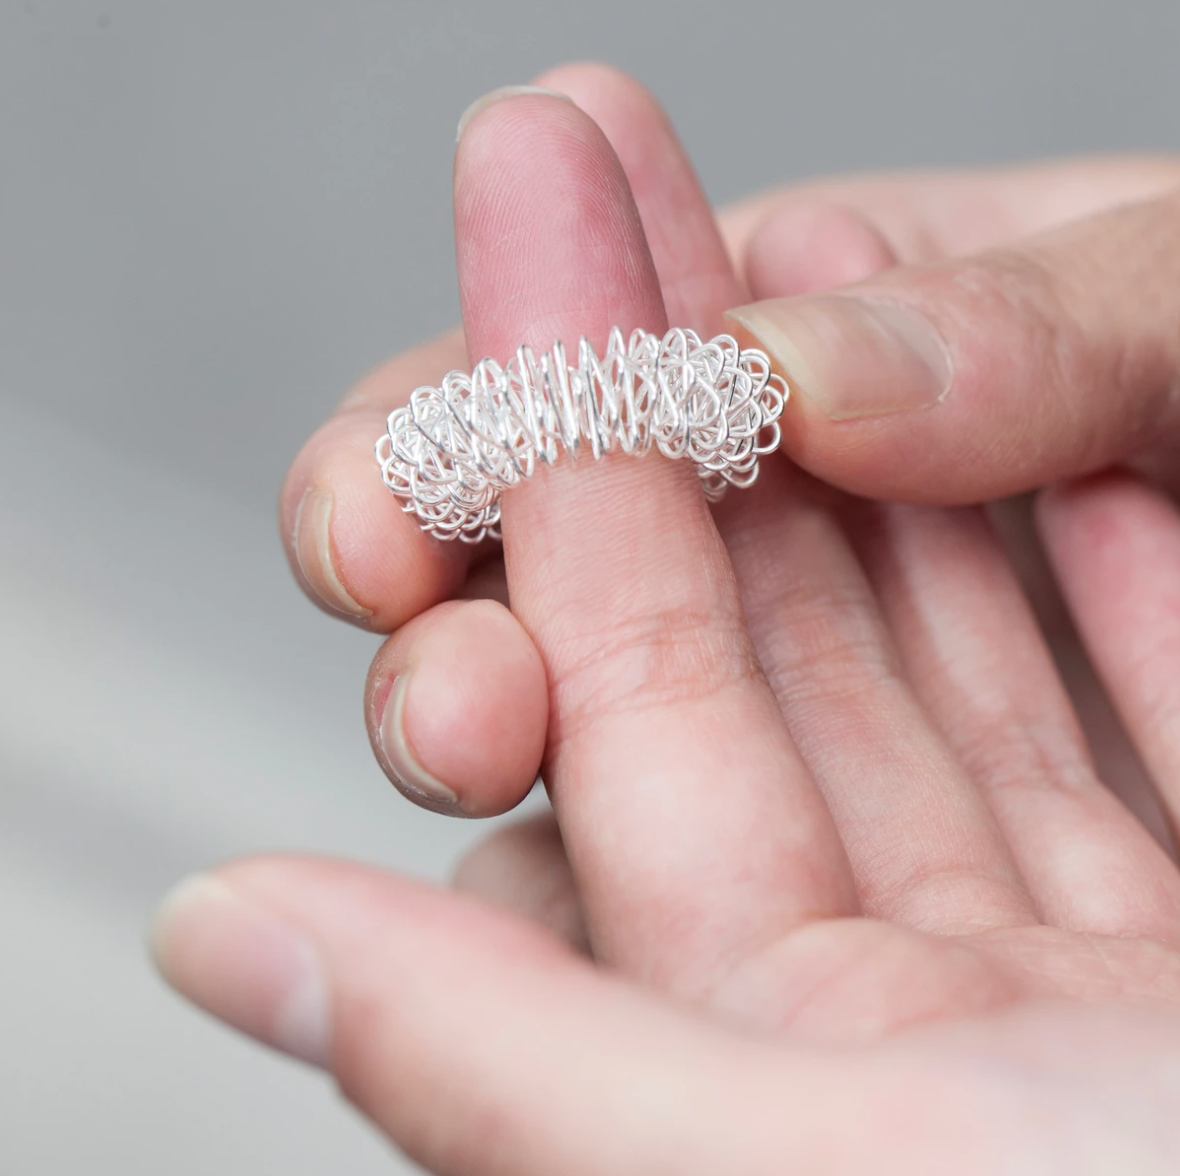 Acupressure Rings Spiky Sensory Rings Fingers Reduce Anxiety - Temu